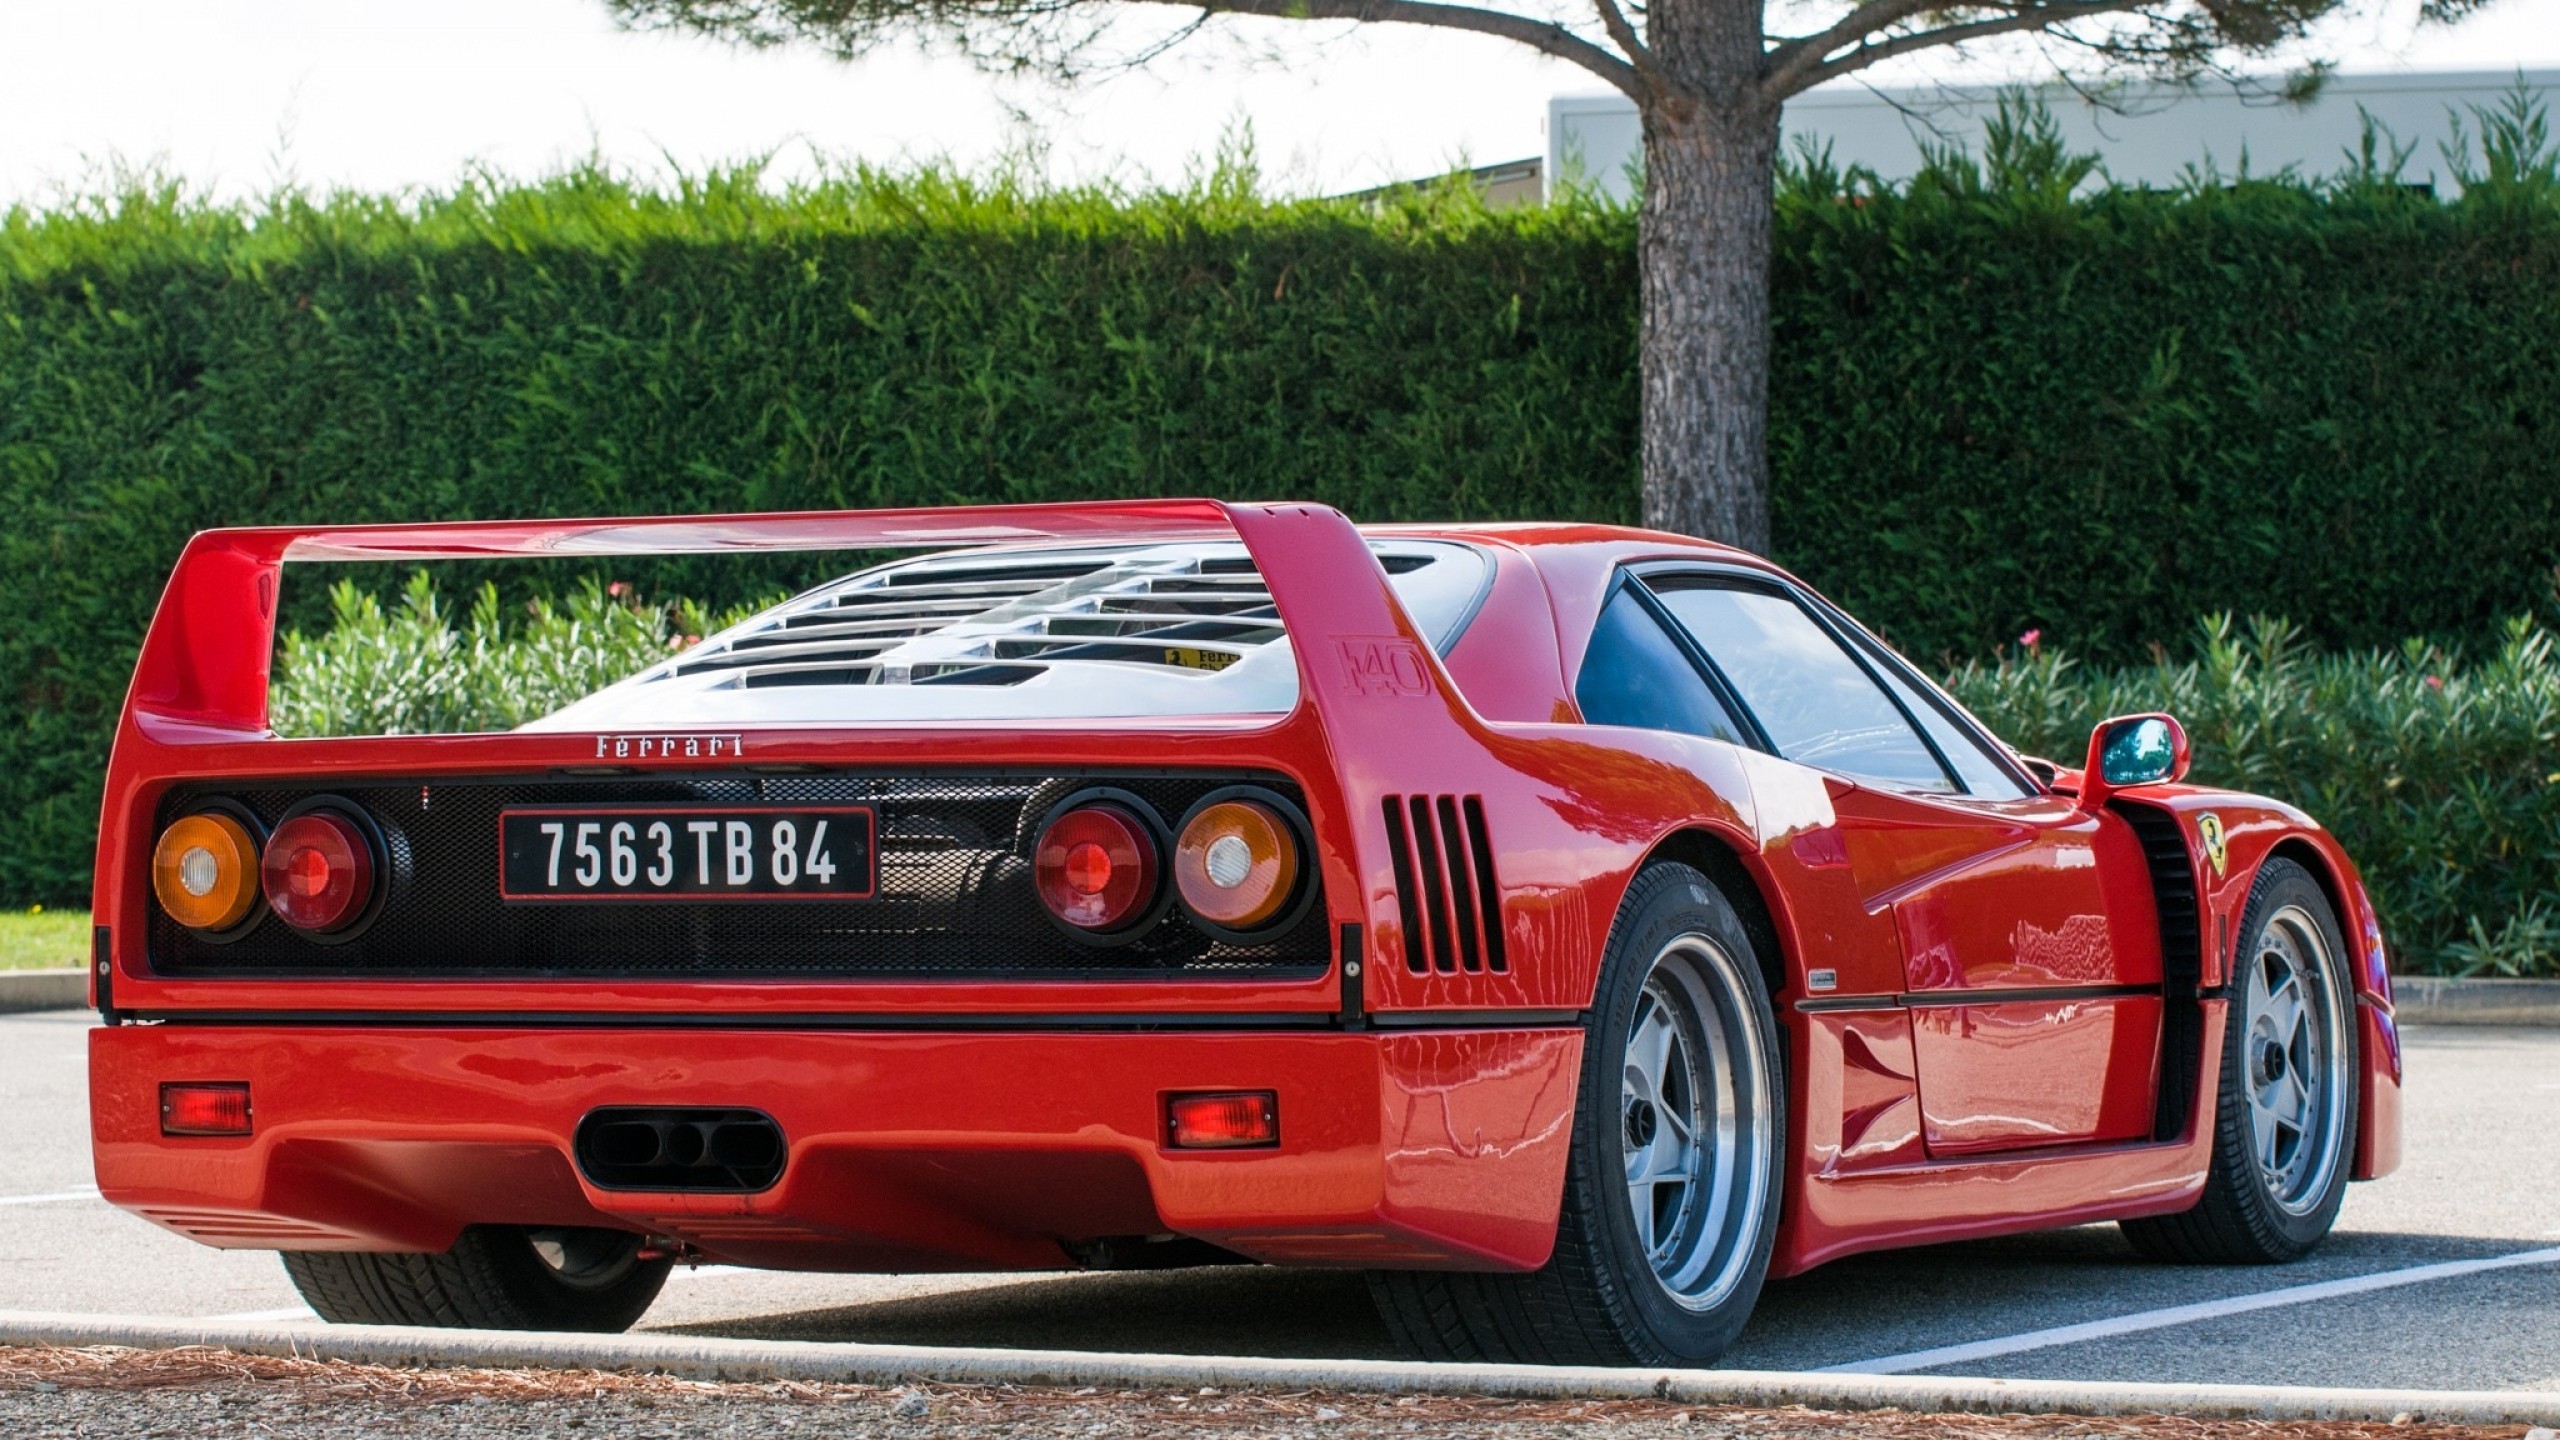 Ferrari F40, Back View, Red, Sport, Cars - Ferrari F40 - HD Wallpaper 